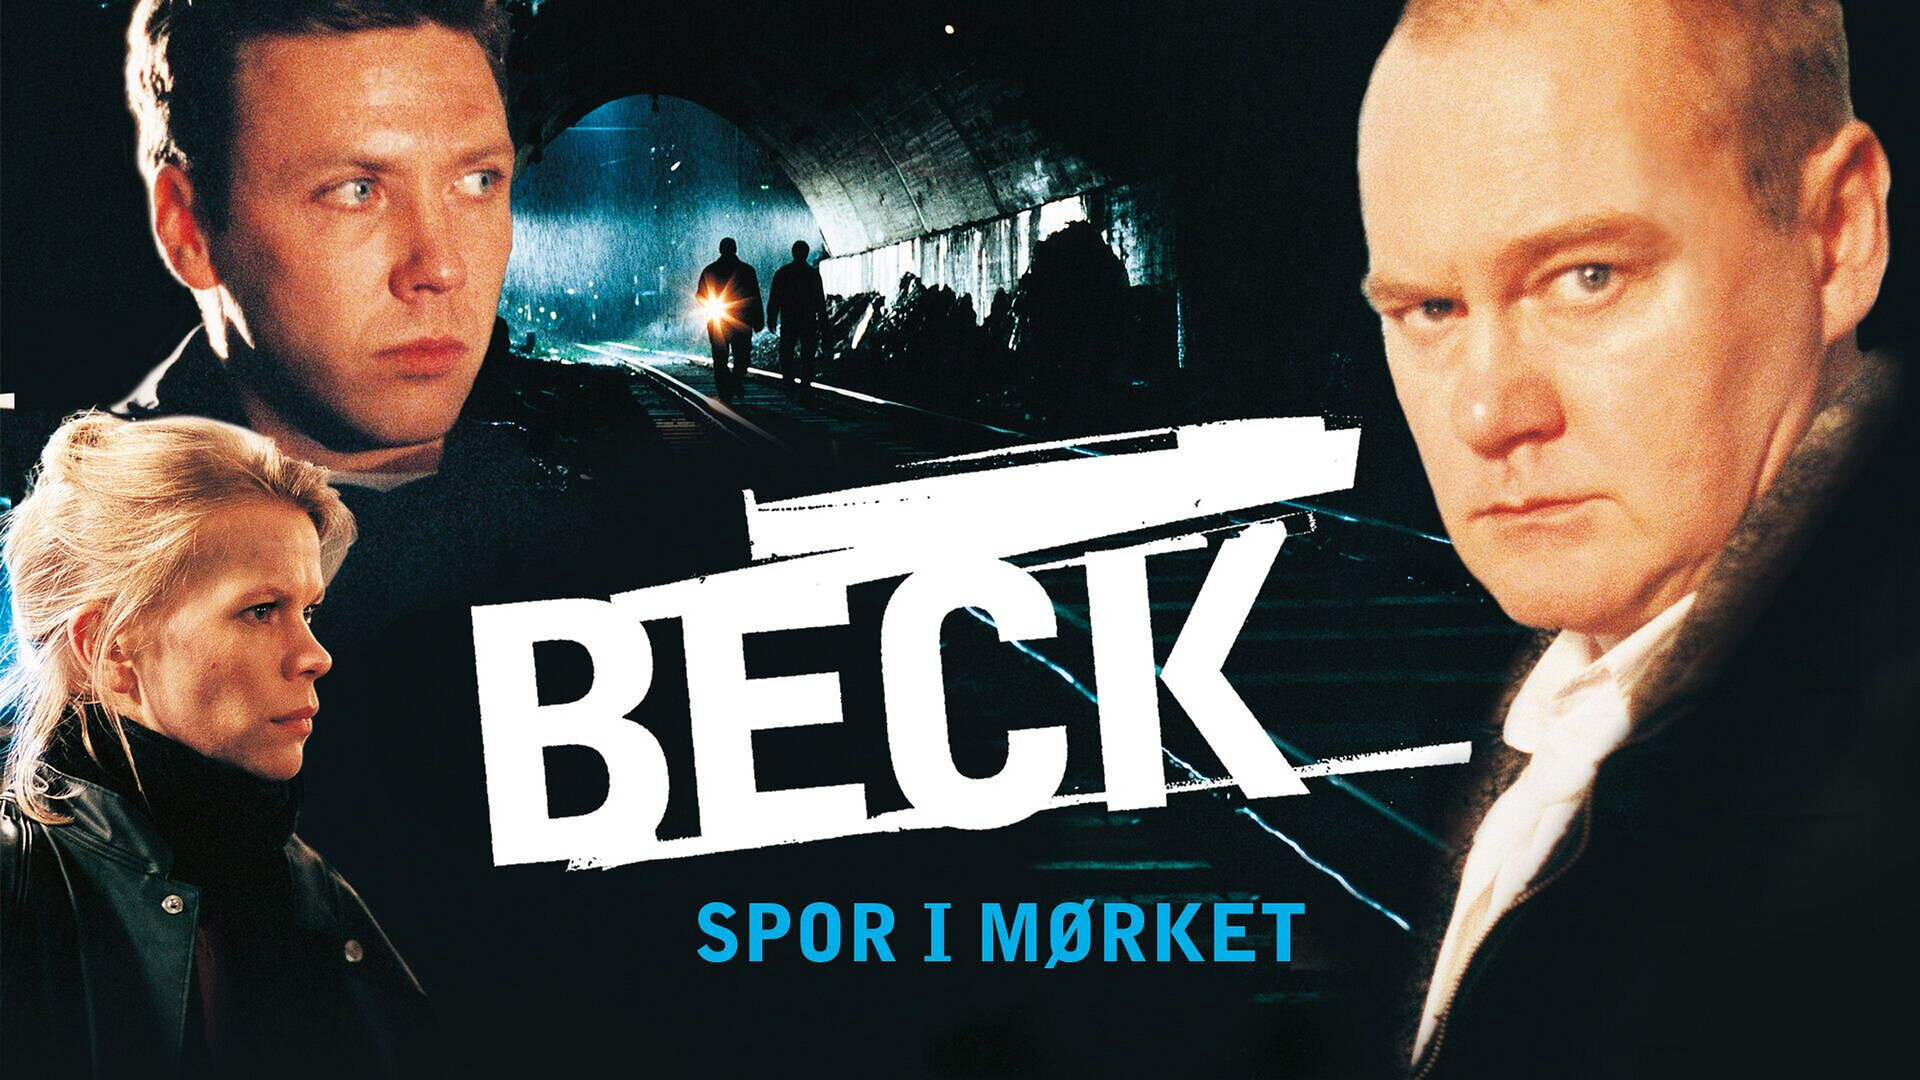 Beck - Spor i mørket (8)